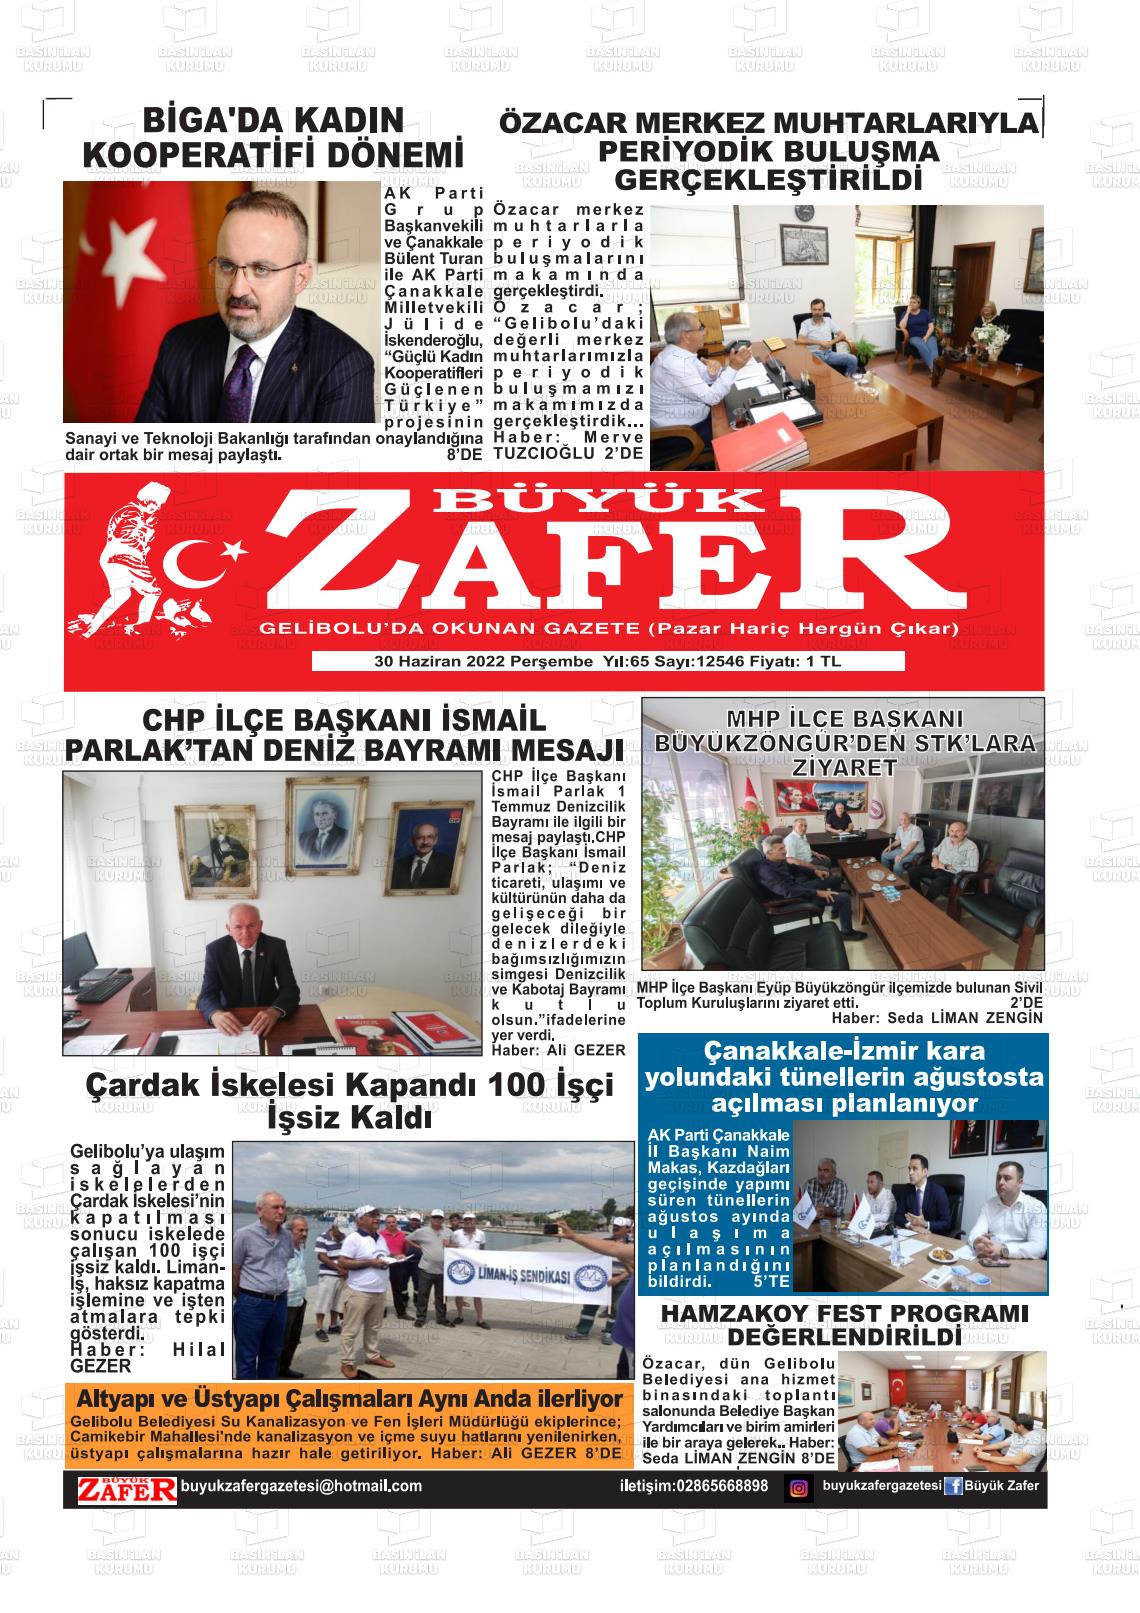 30 Haziran 2022 Büyük Zafer Gazete Manşeti